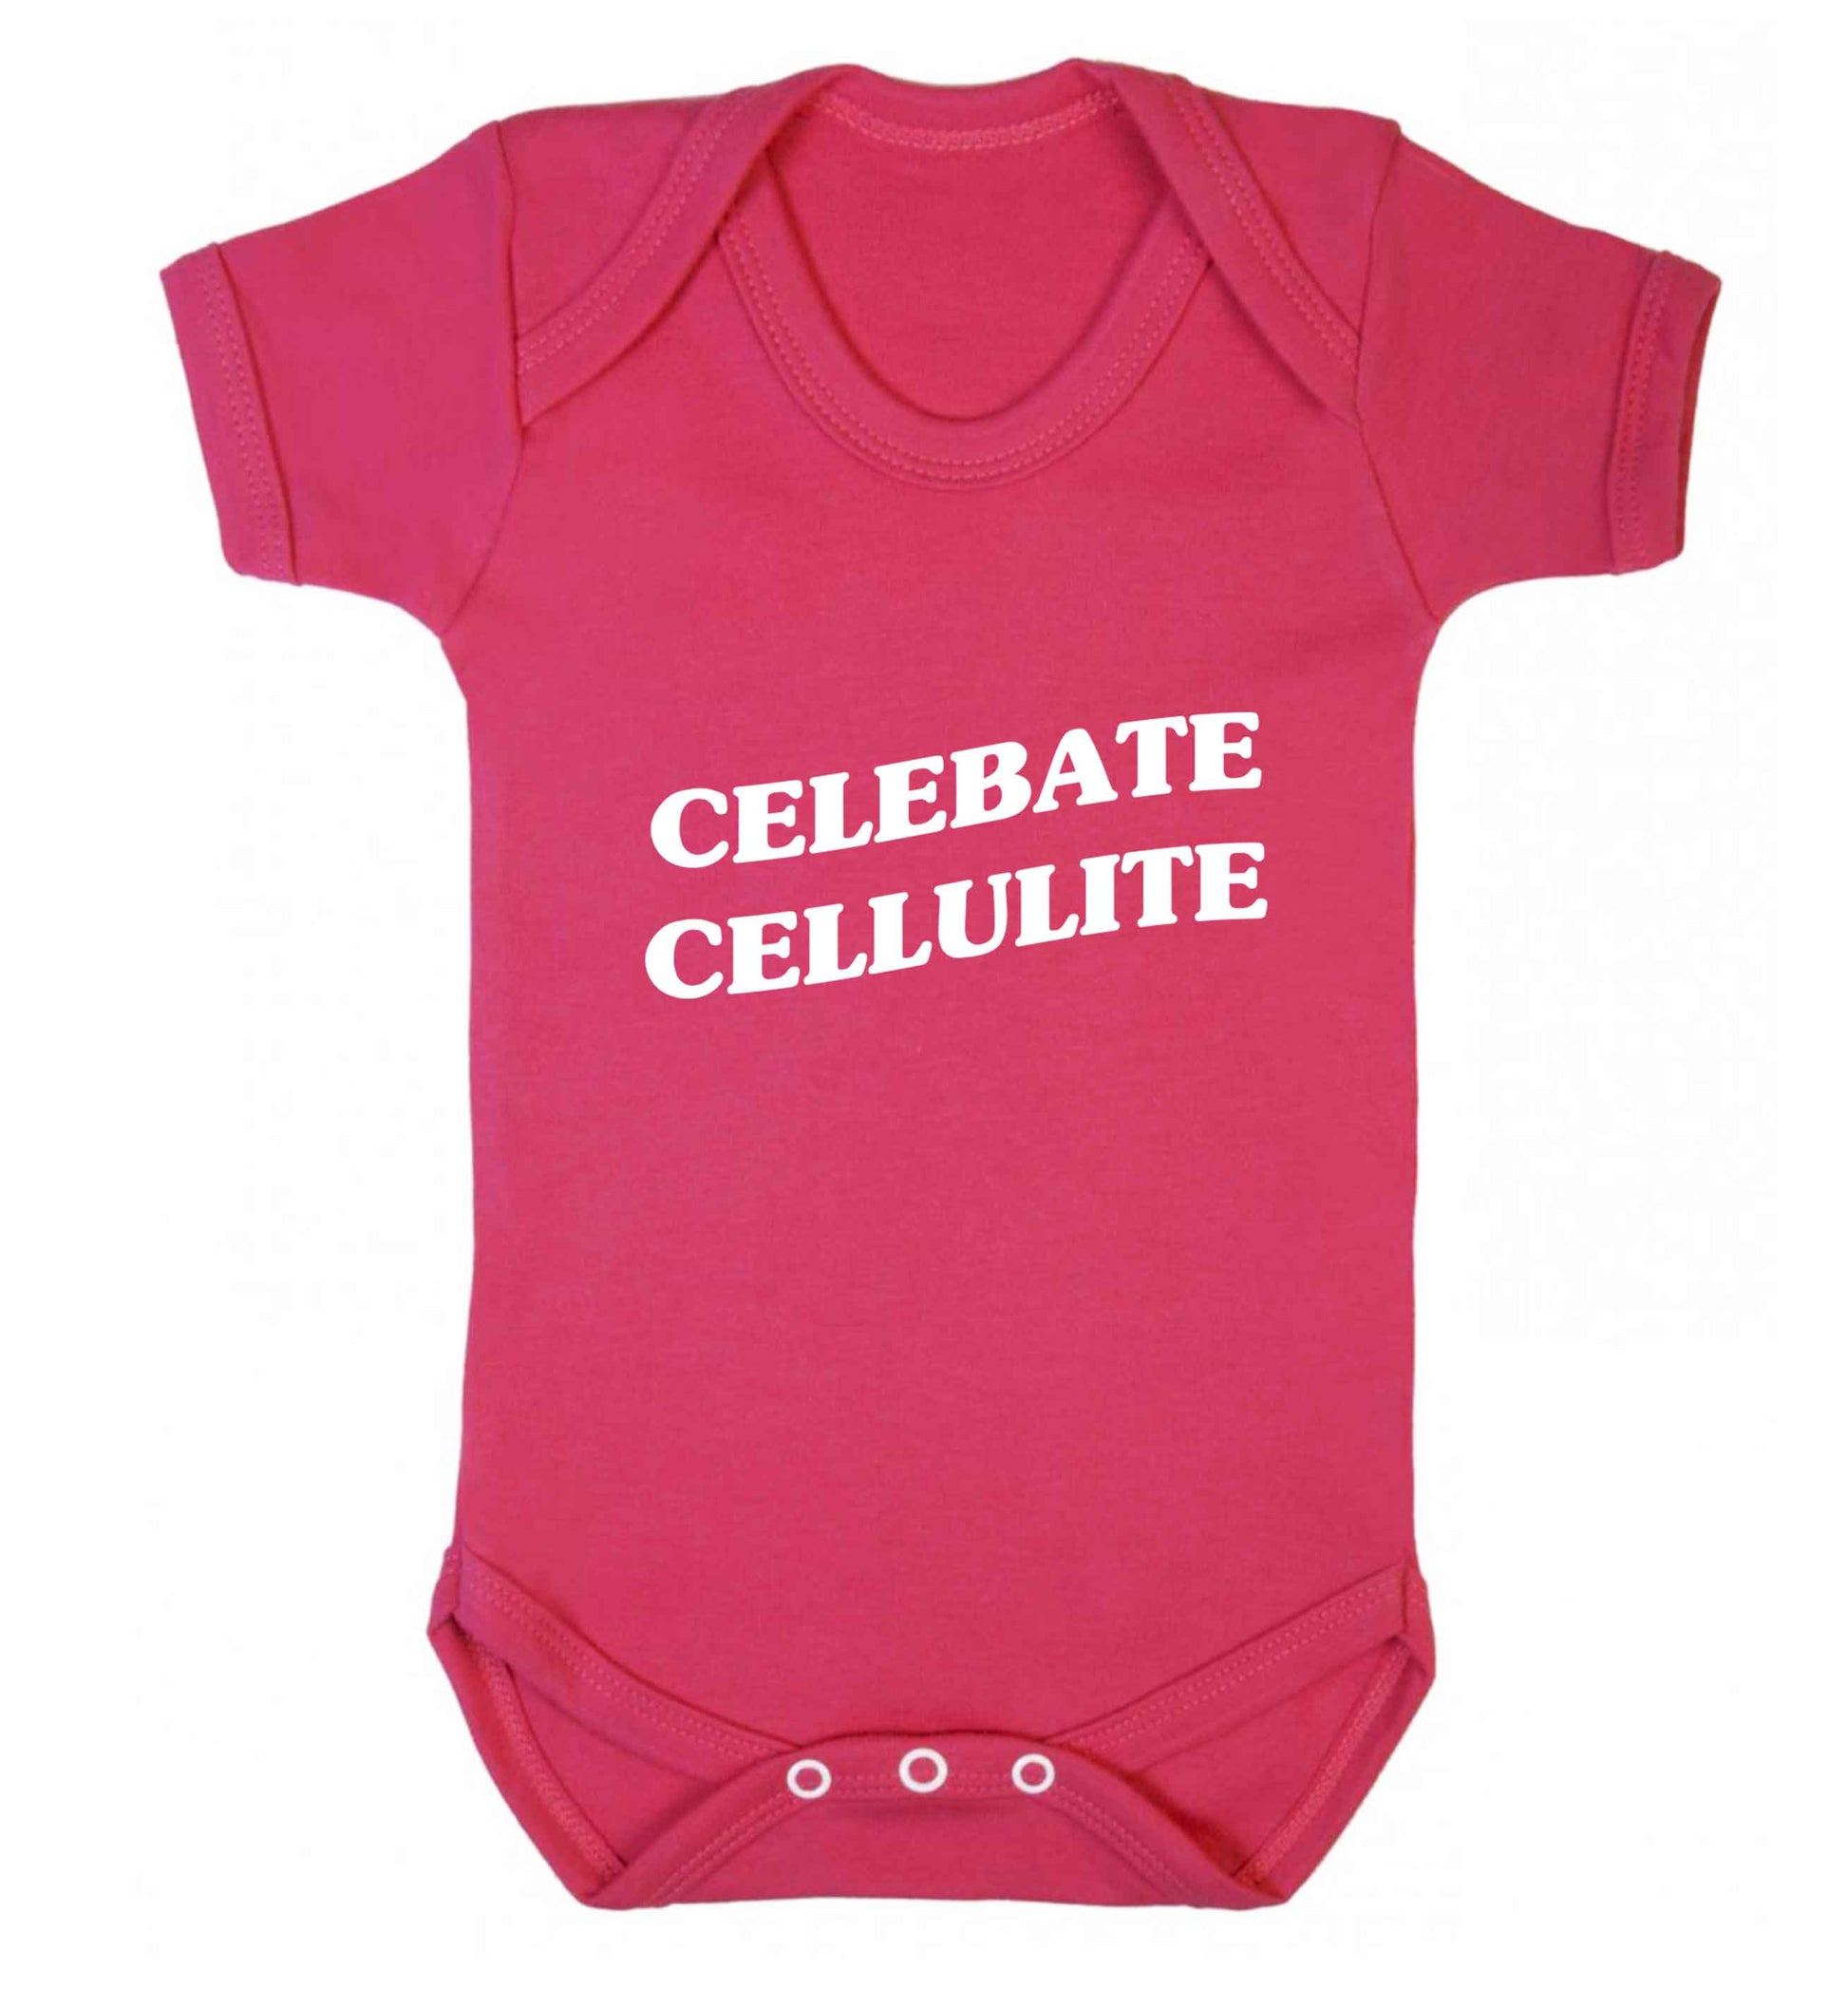 Celebrate cellulite baby vest dark pink 18-24 months